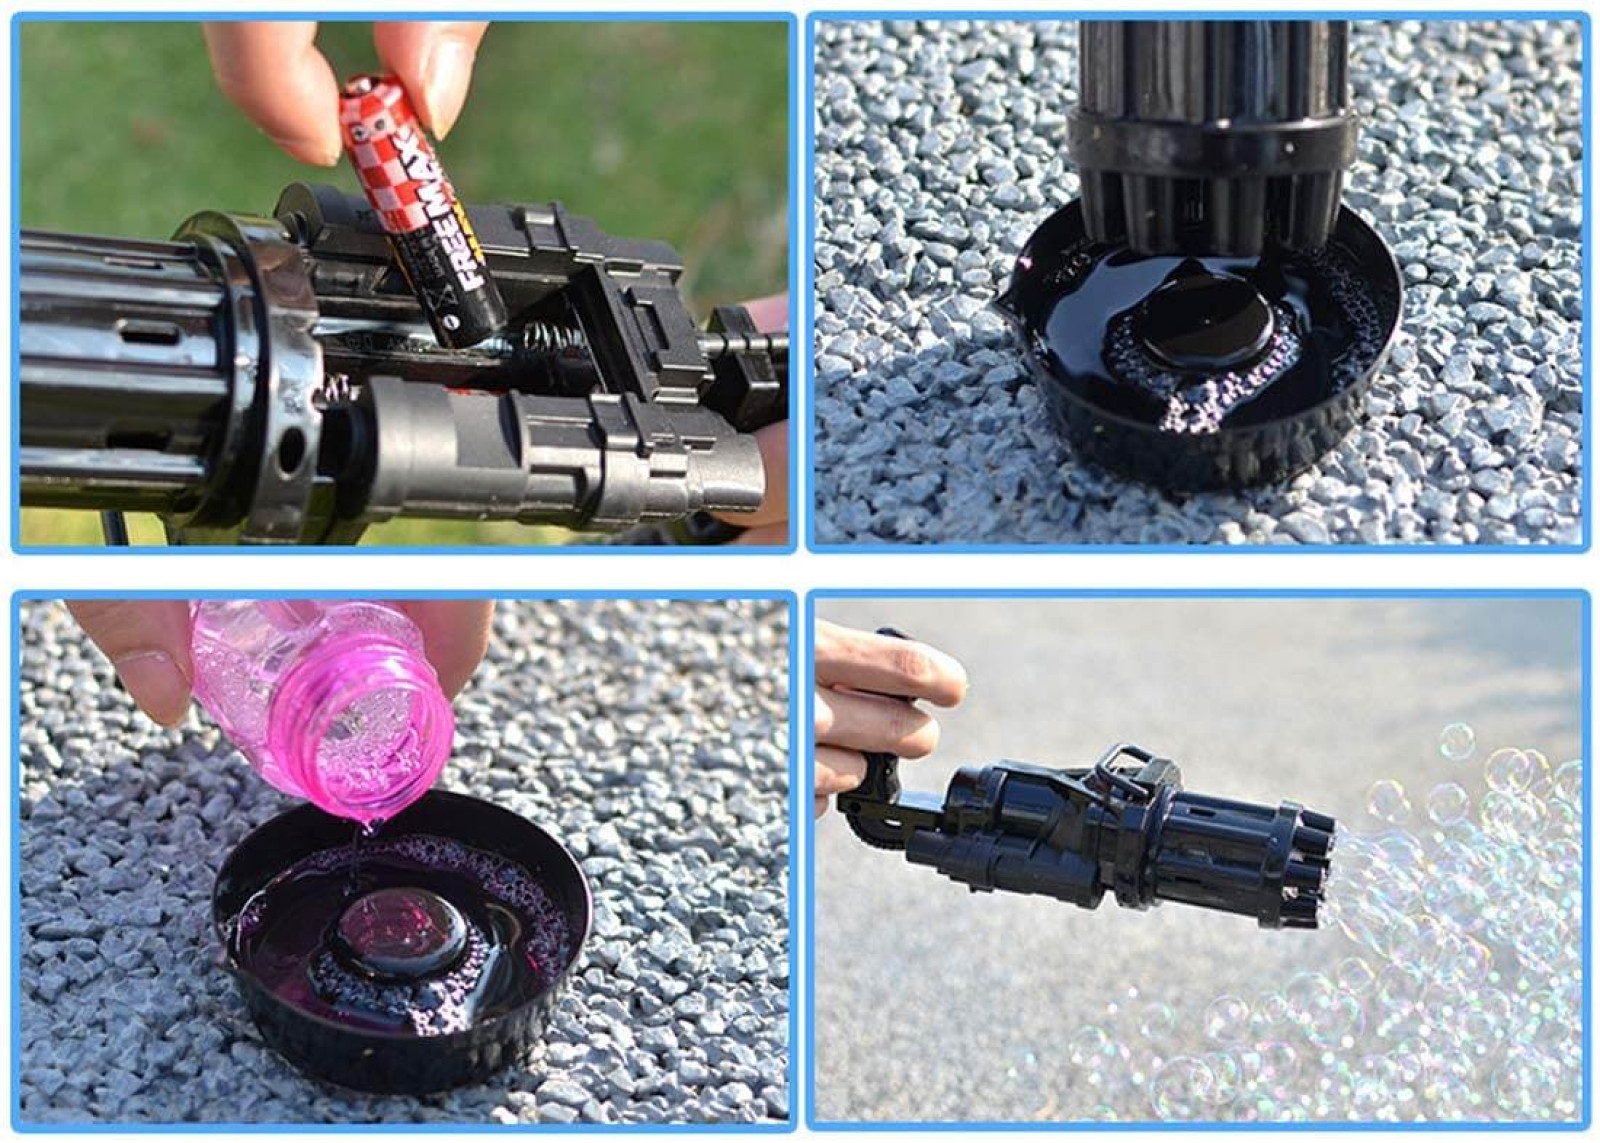 Автоматическая игрушка-пулемет генератор для создания мыльных пузырей Bubble Gun Blaster стандарт 194126